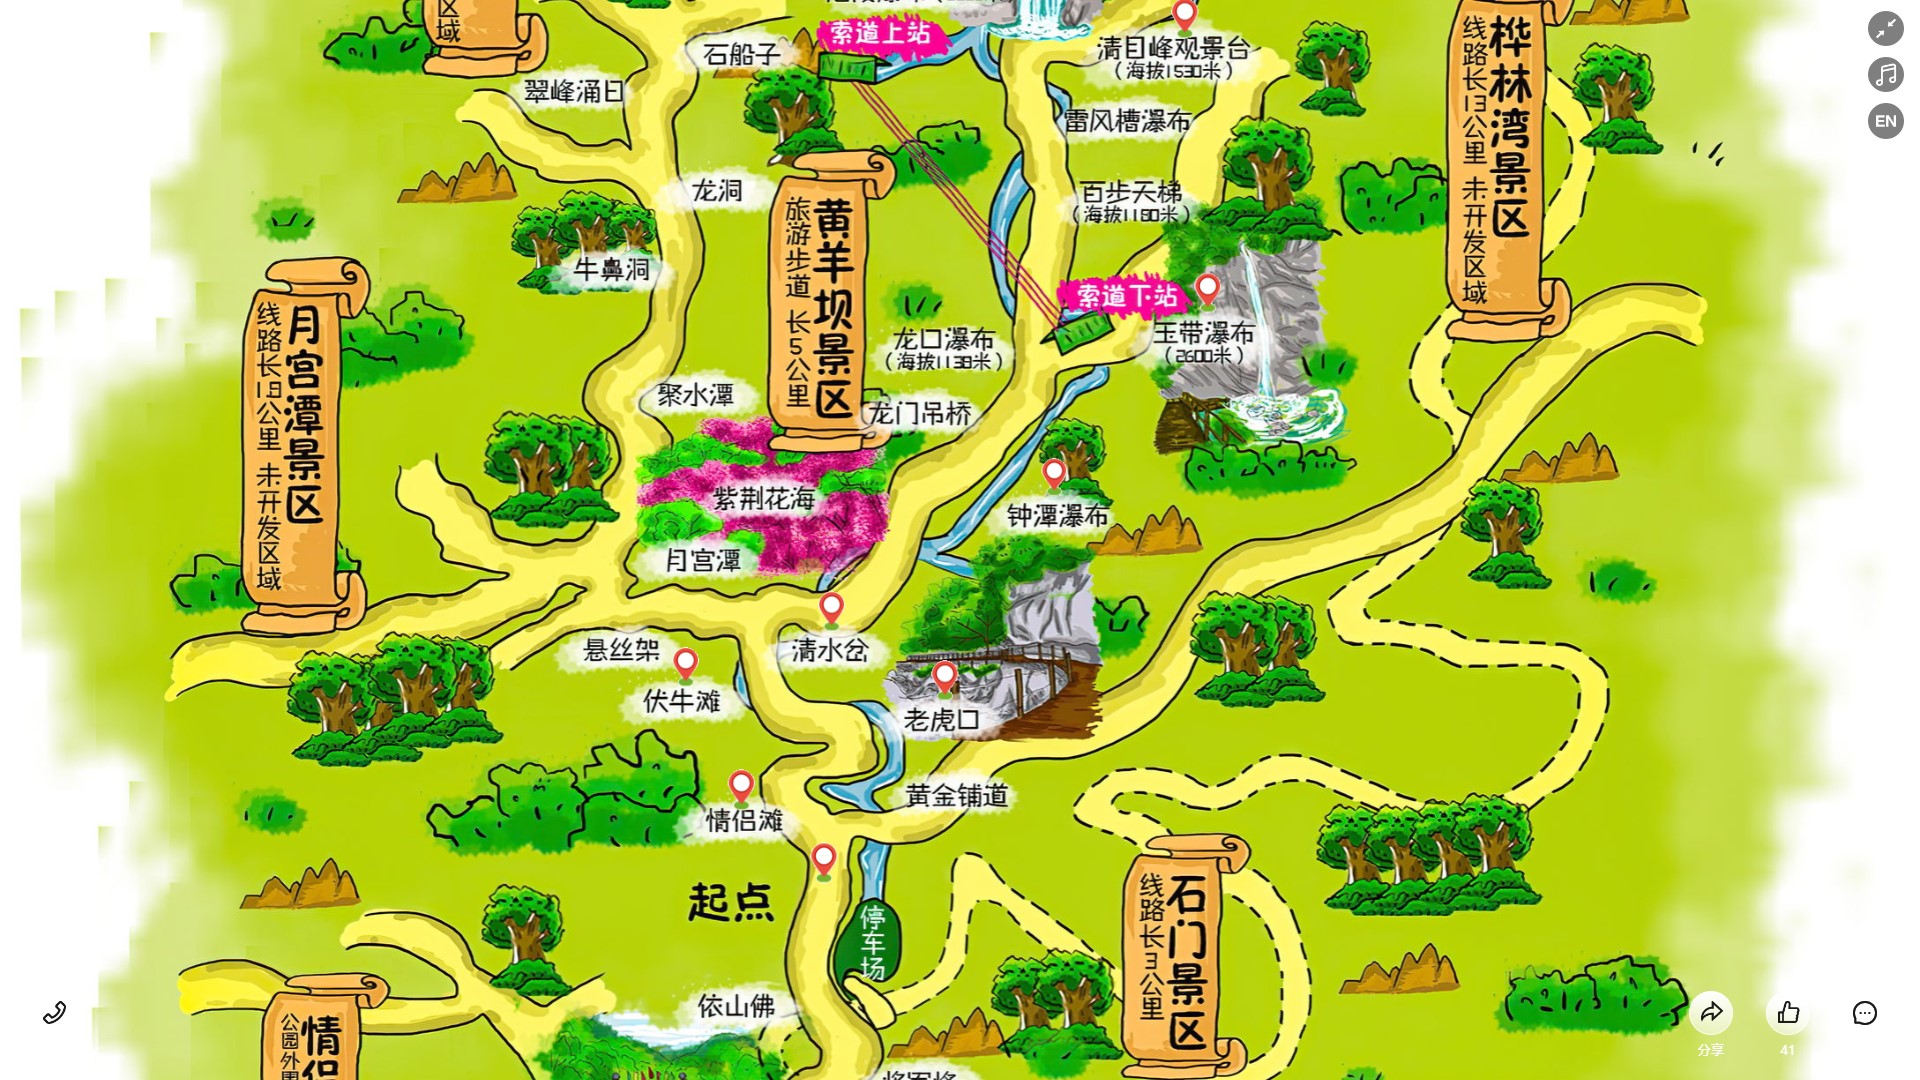 湄潭景区导览系统